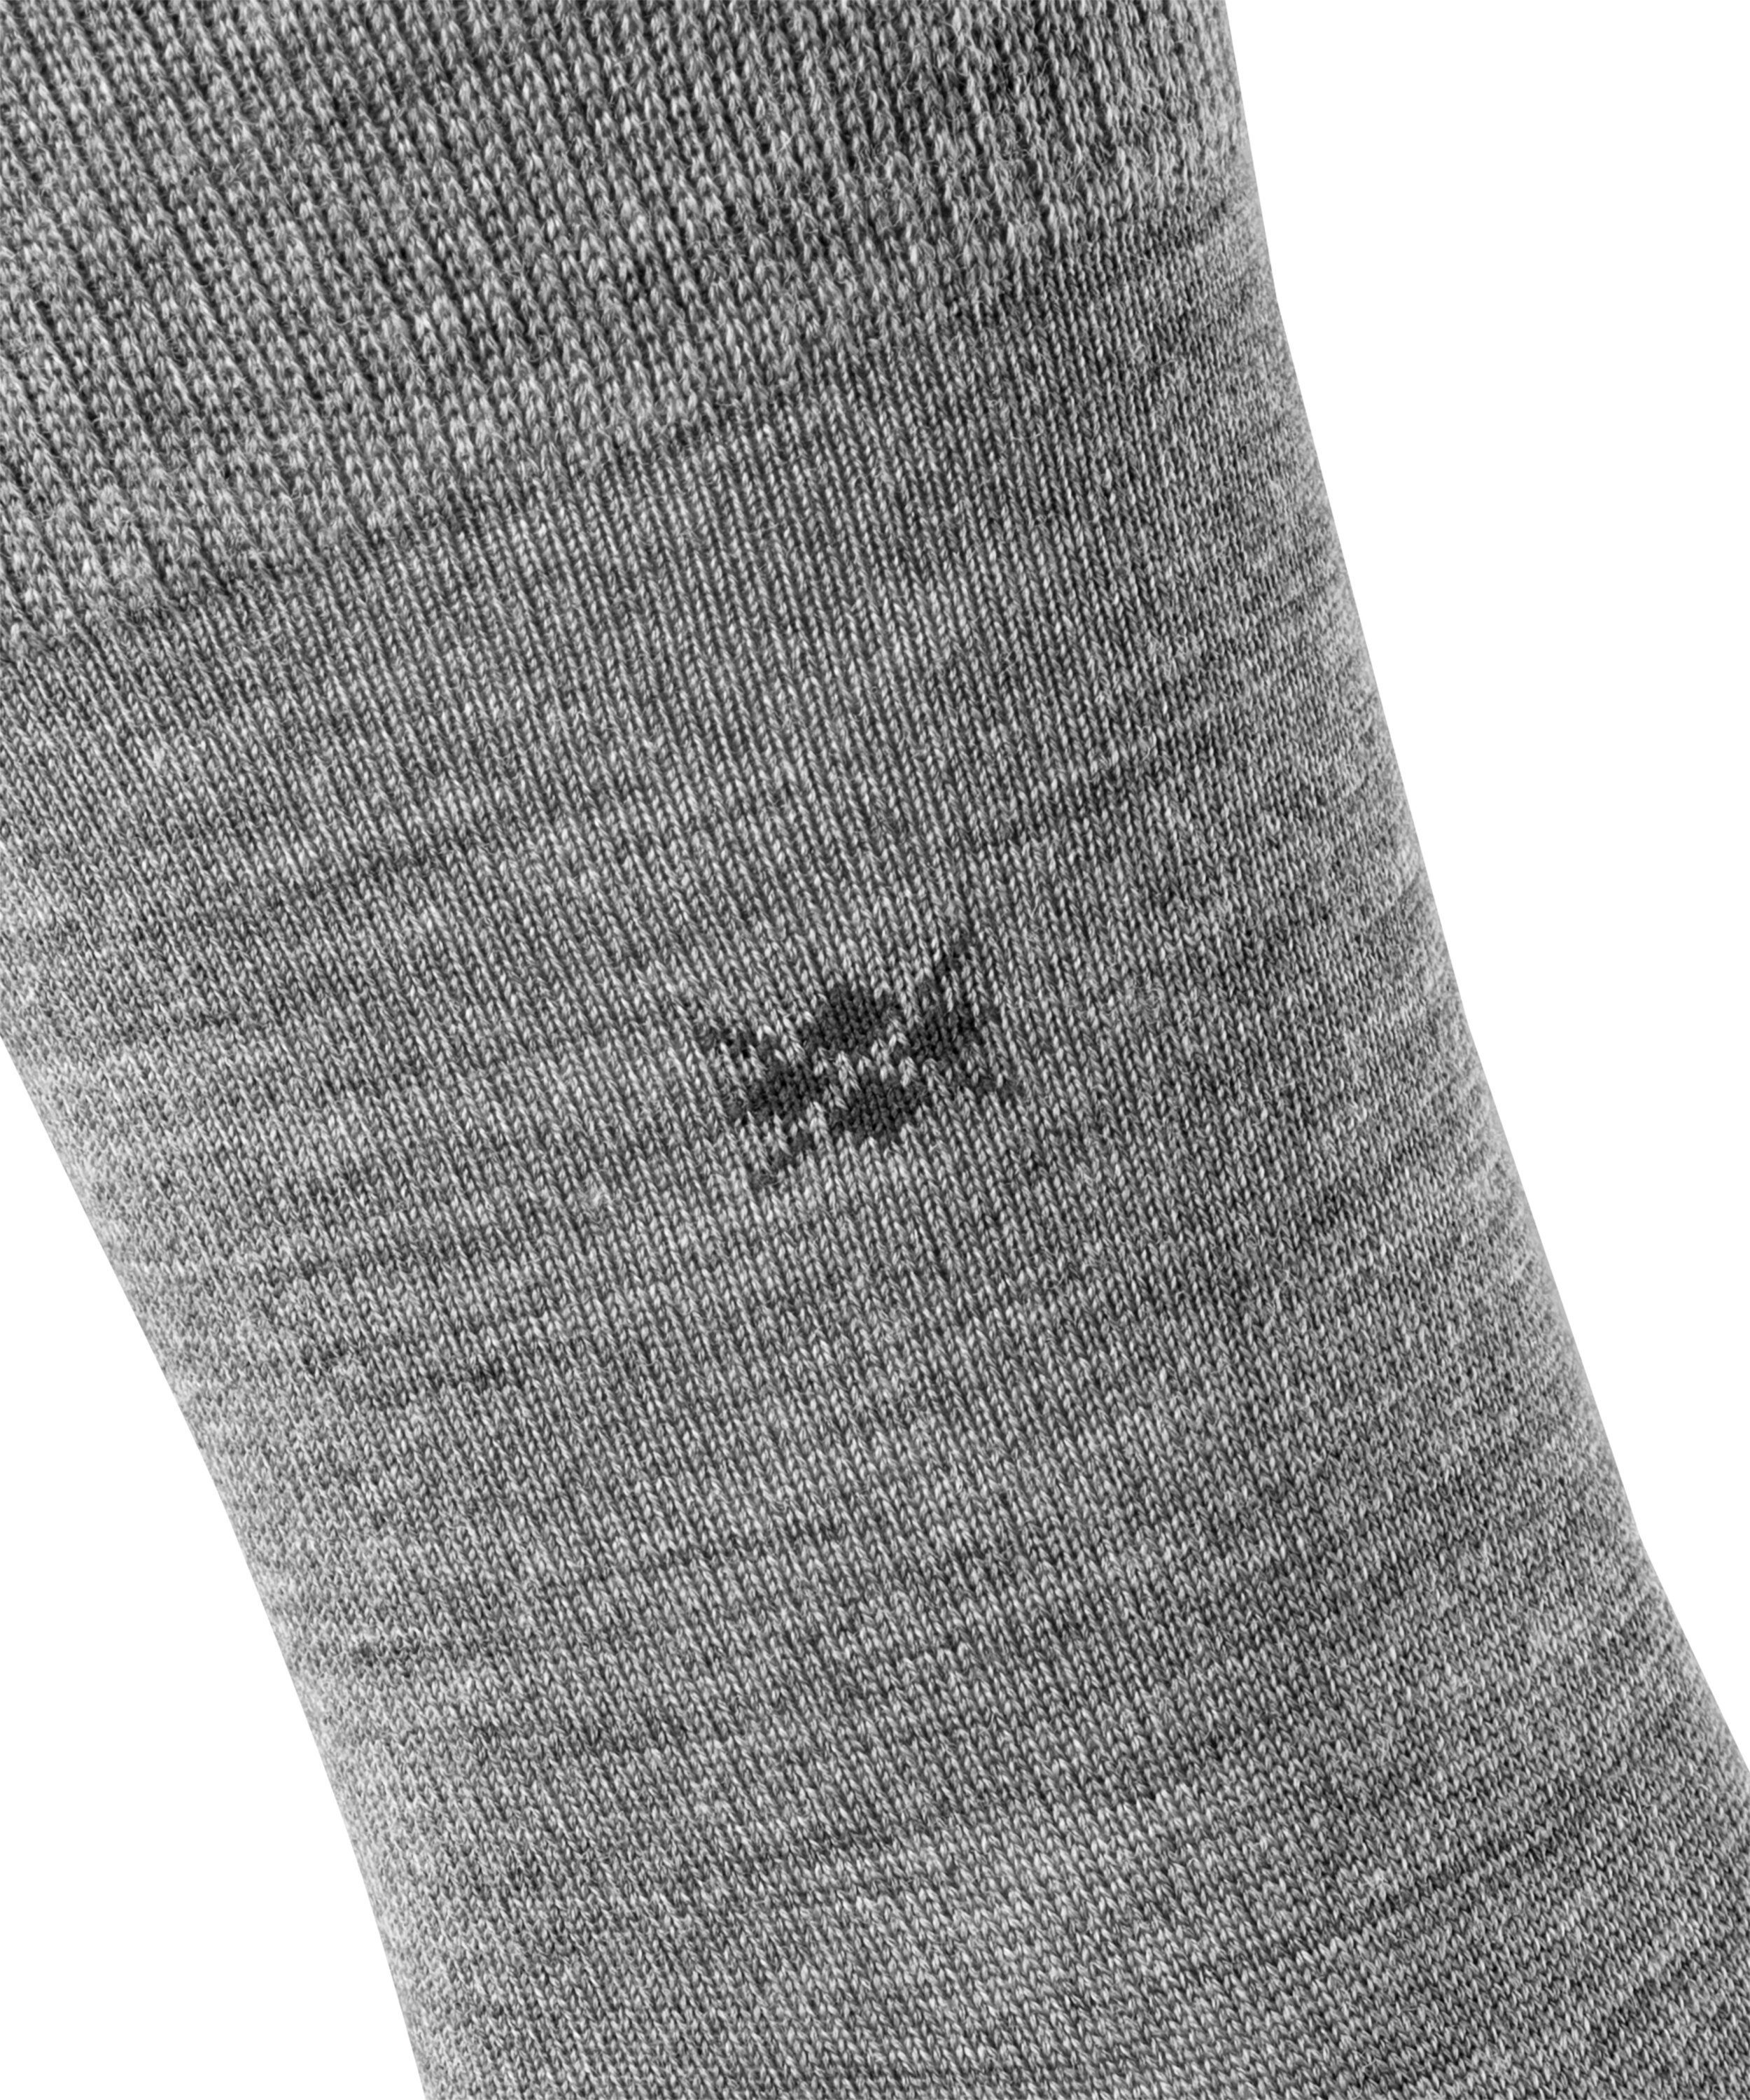 Burlington Socken Leeds (1-Paar) dark (3070) grey